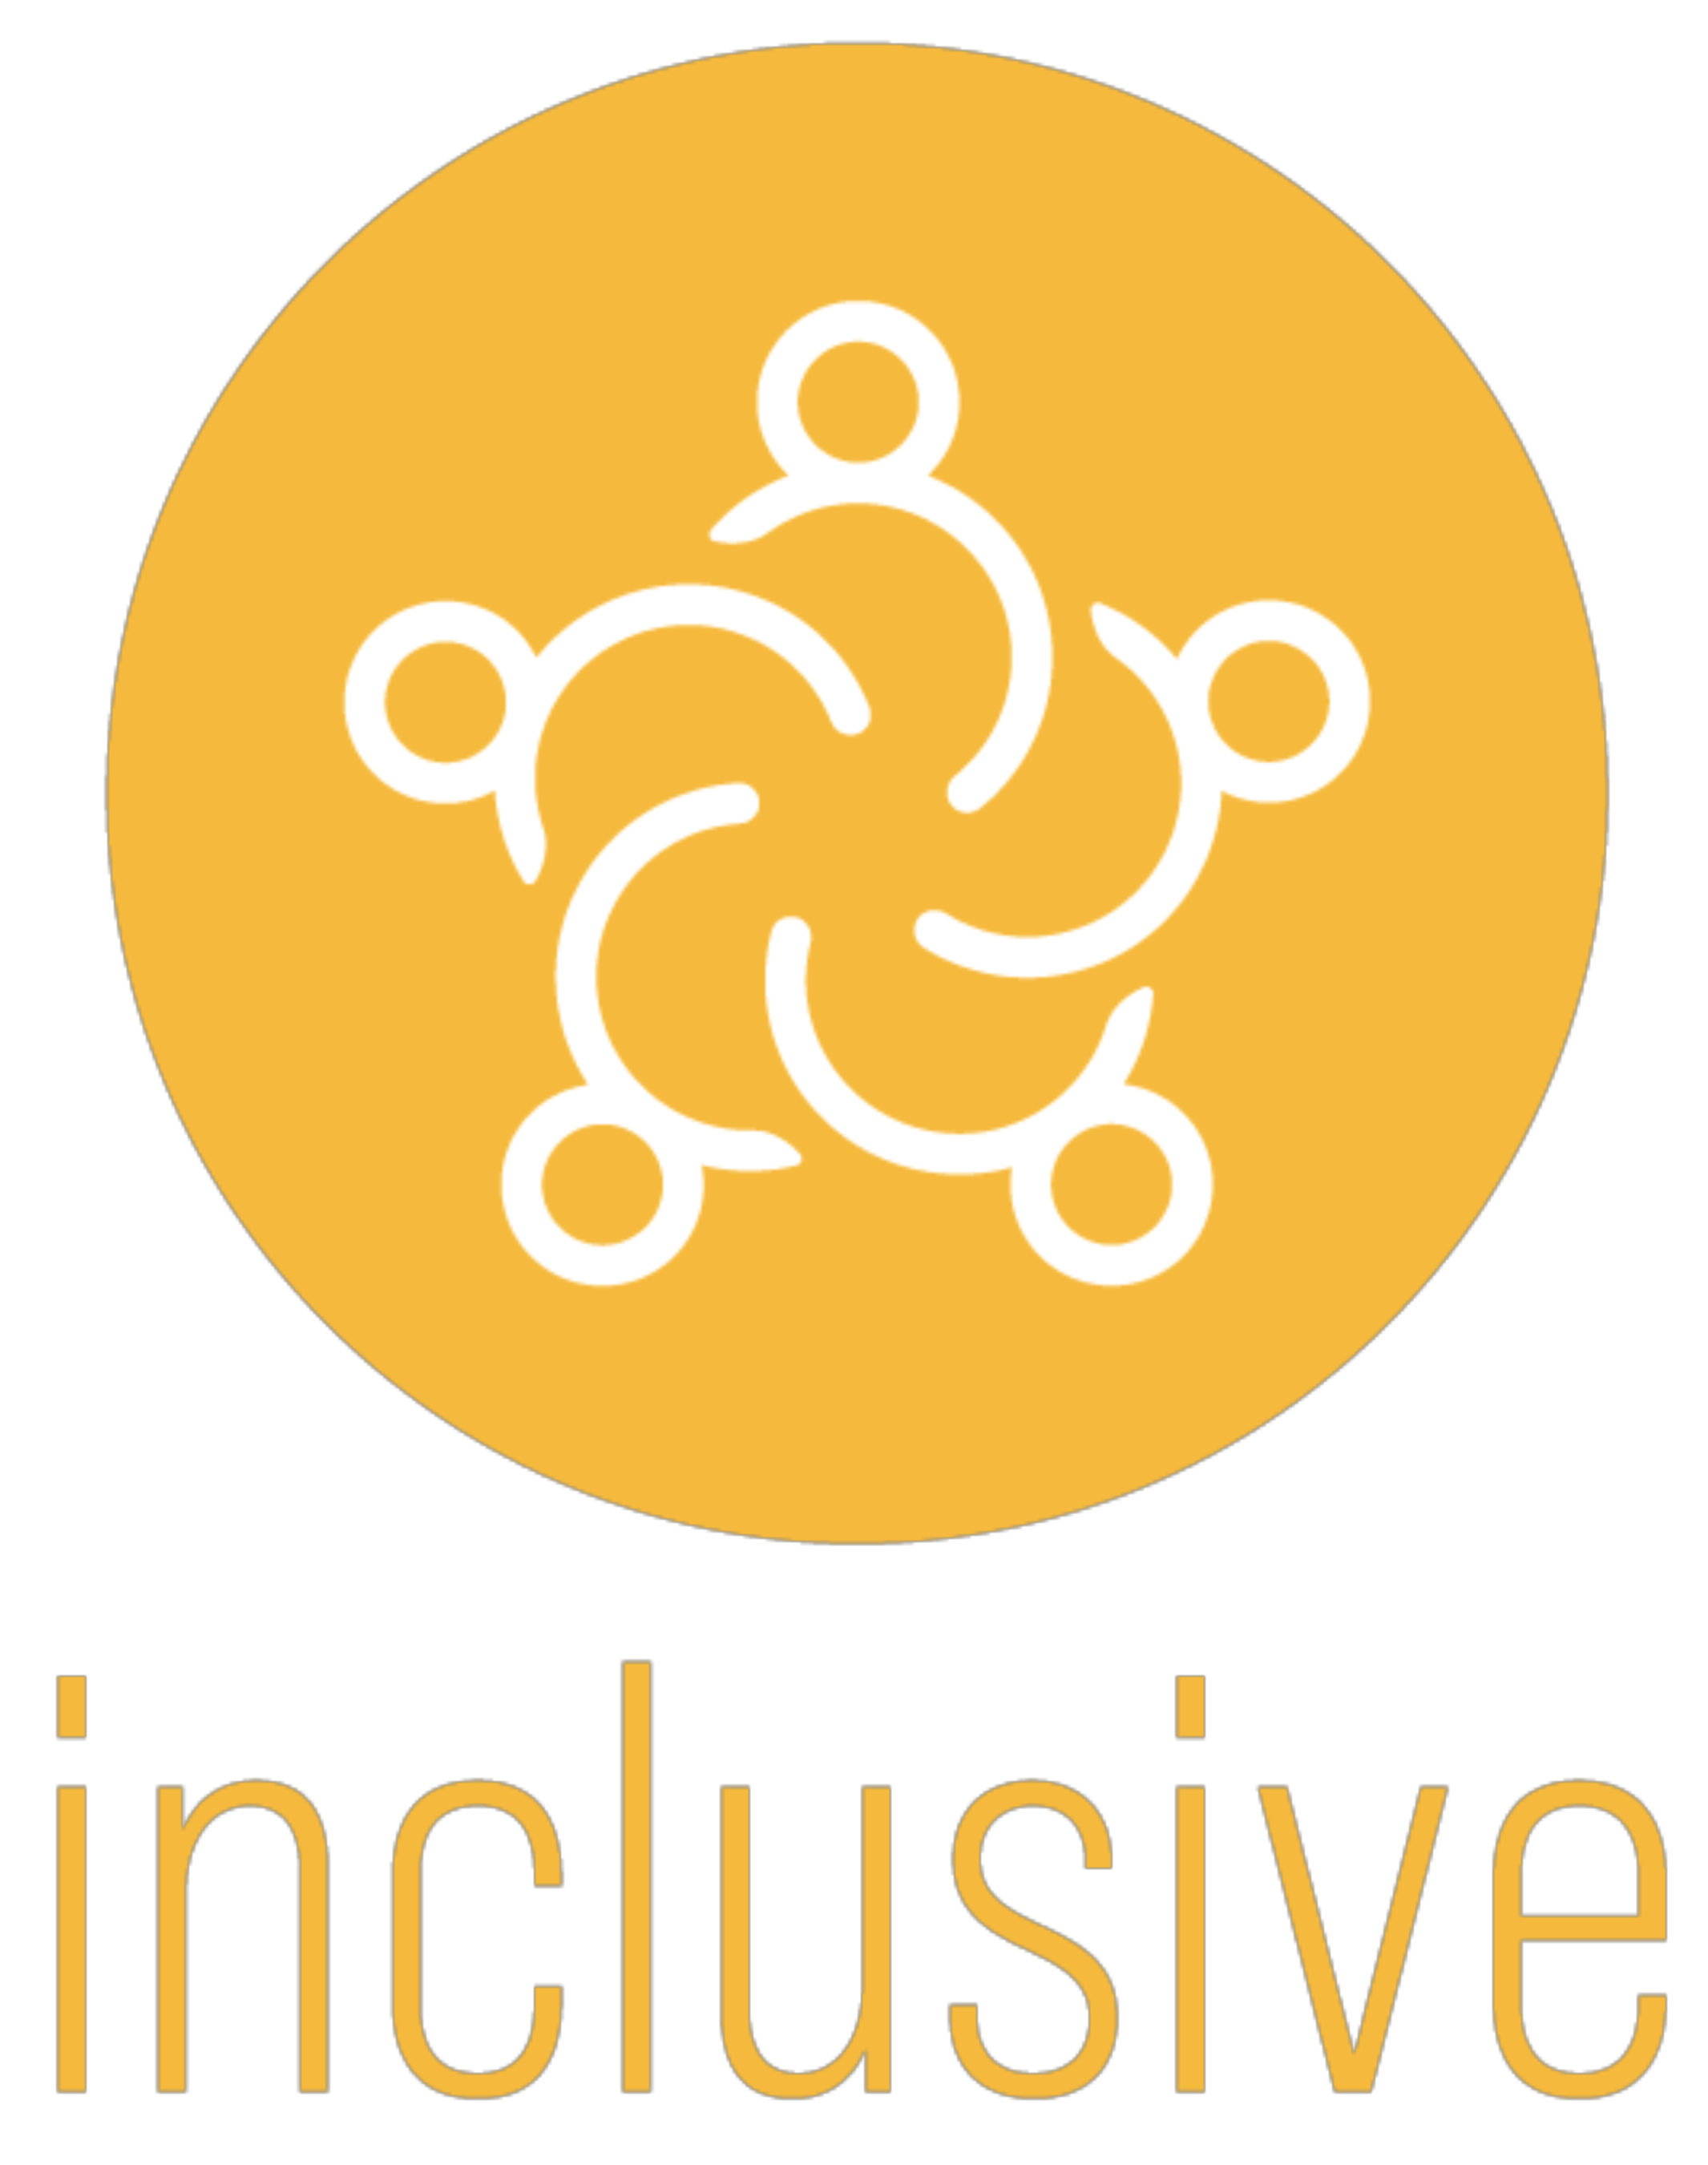 Connect Inclusive Icon